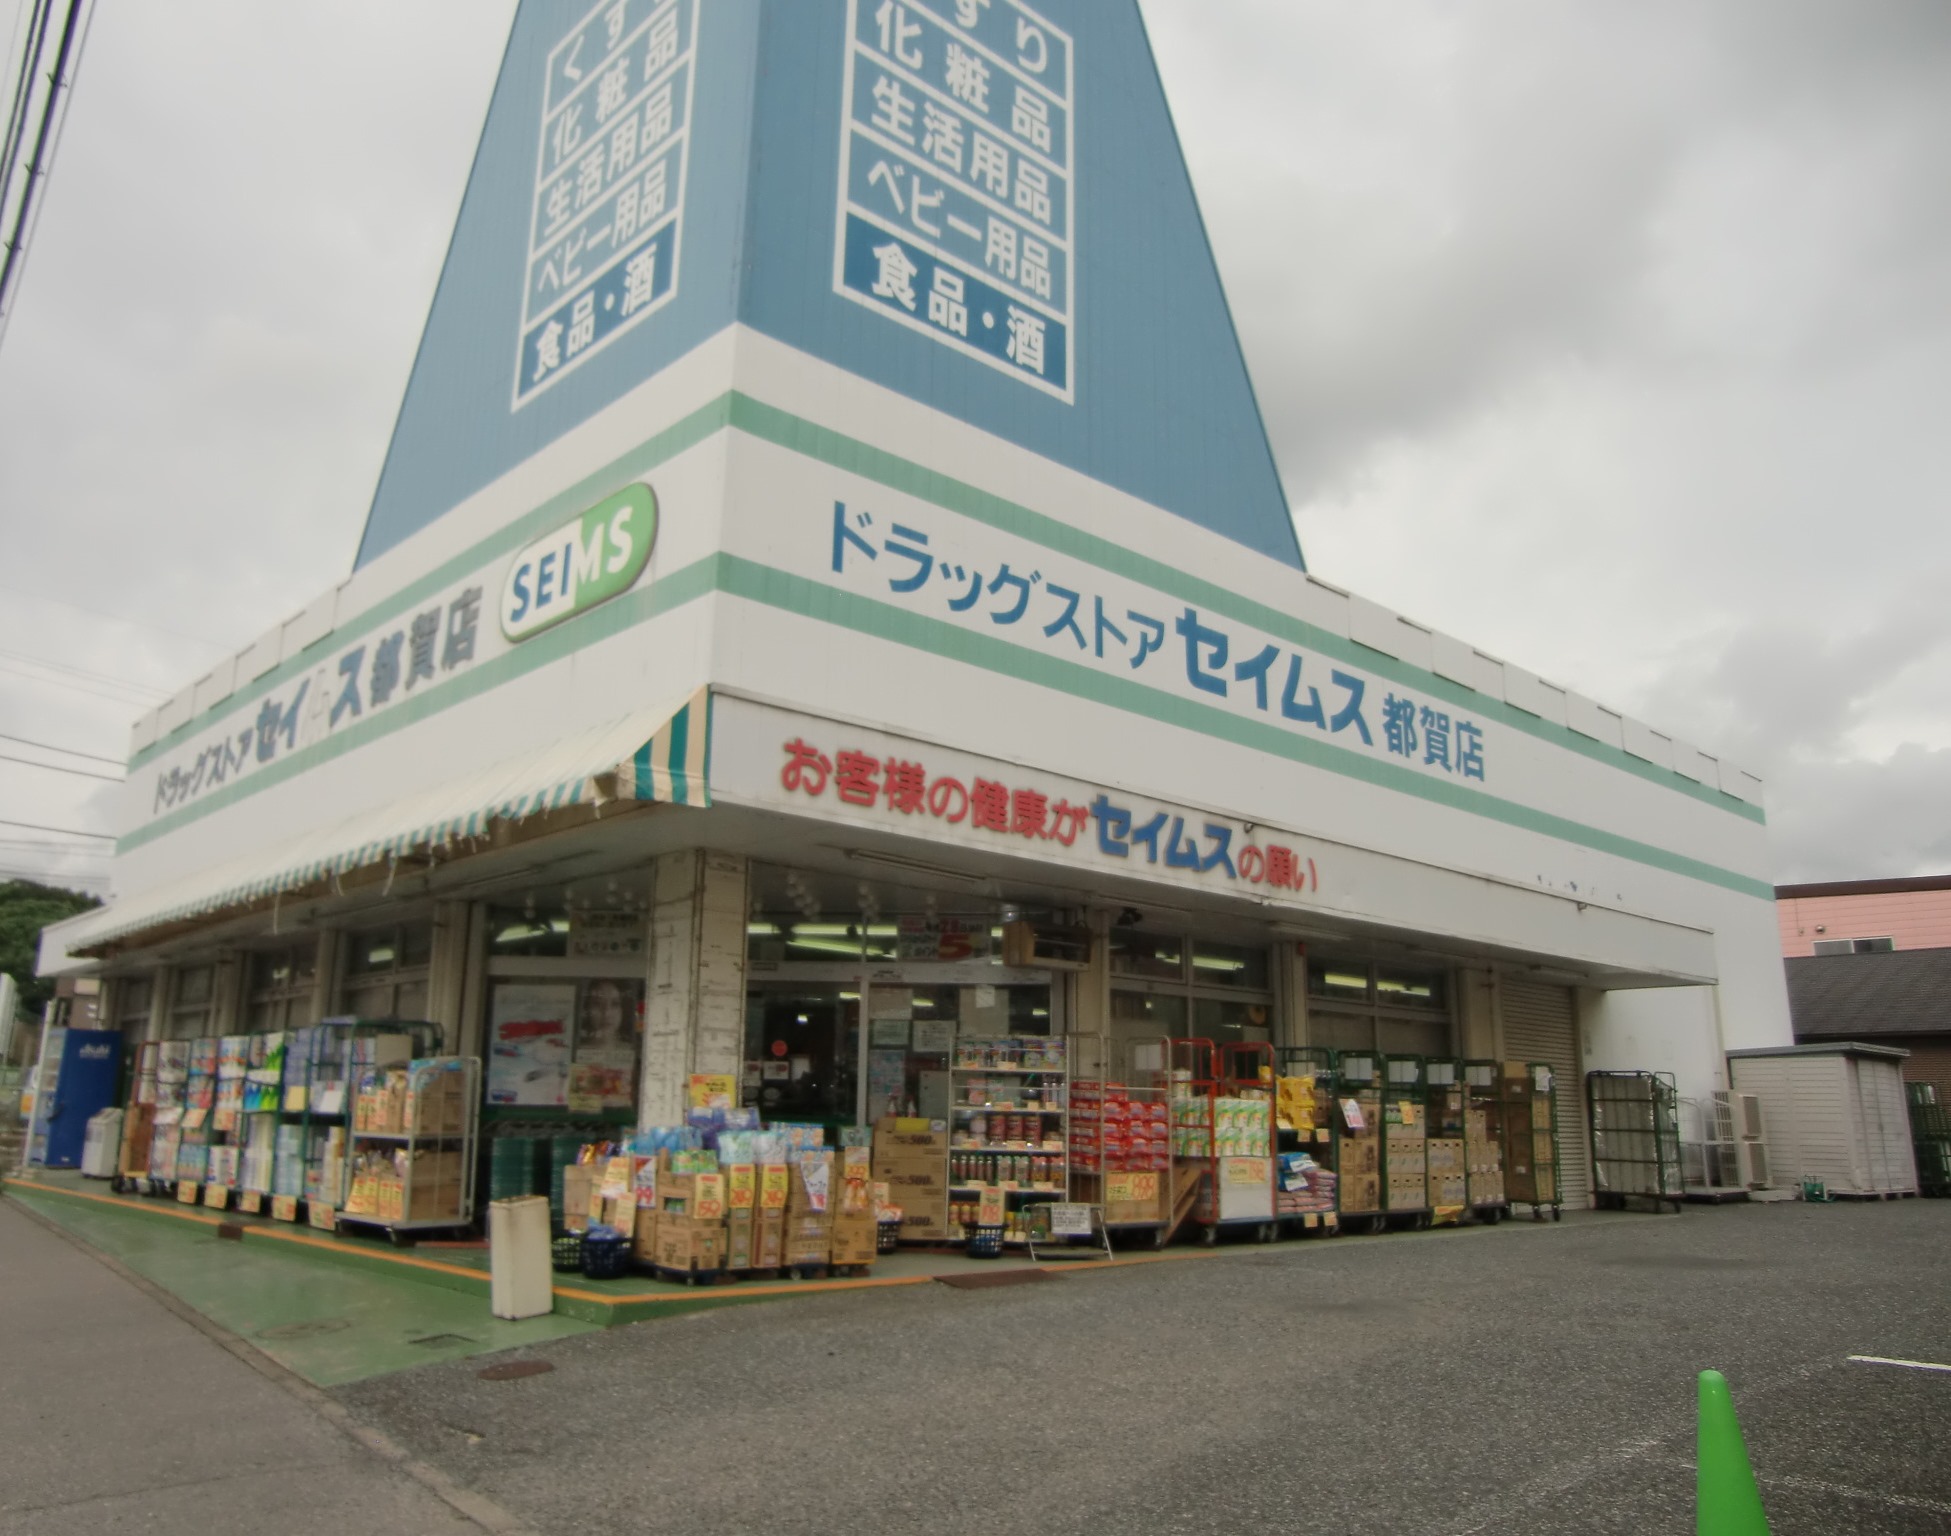 Dorakkusutoa. Drag Seimusu Tsuga shop 826m until (drugstore)